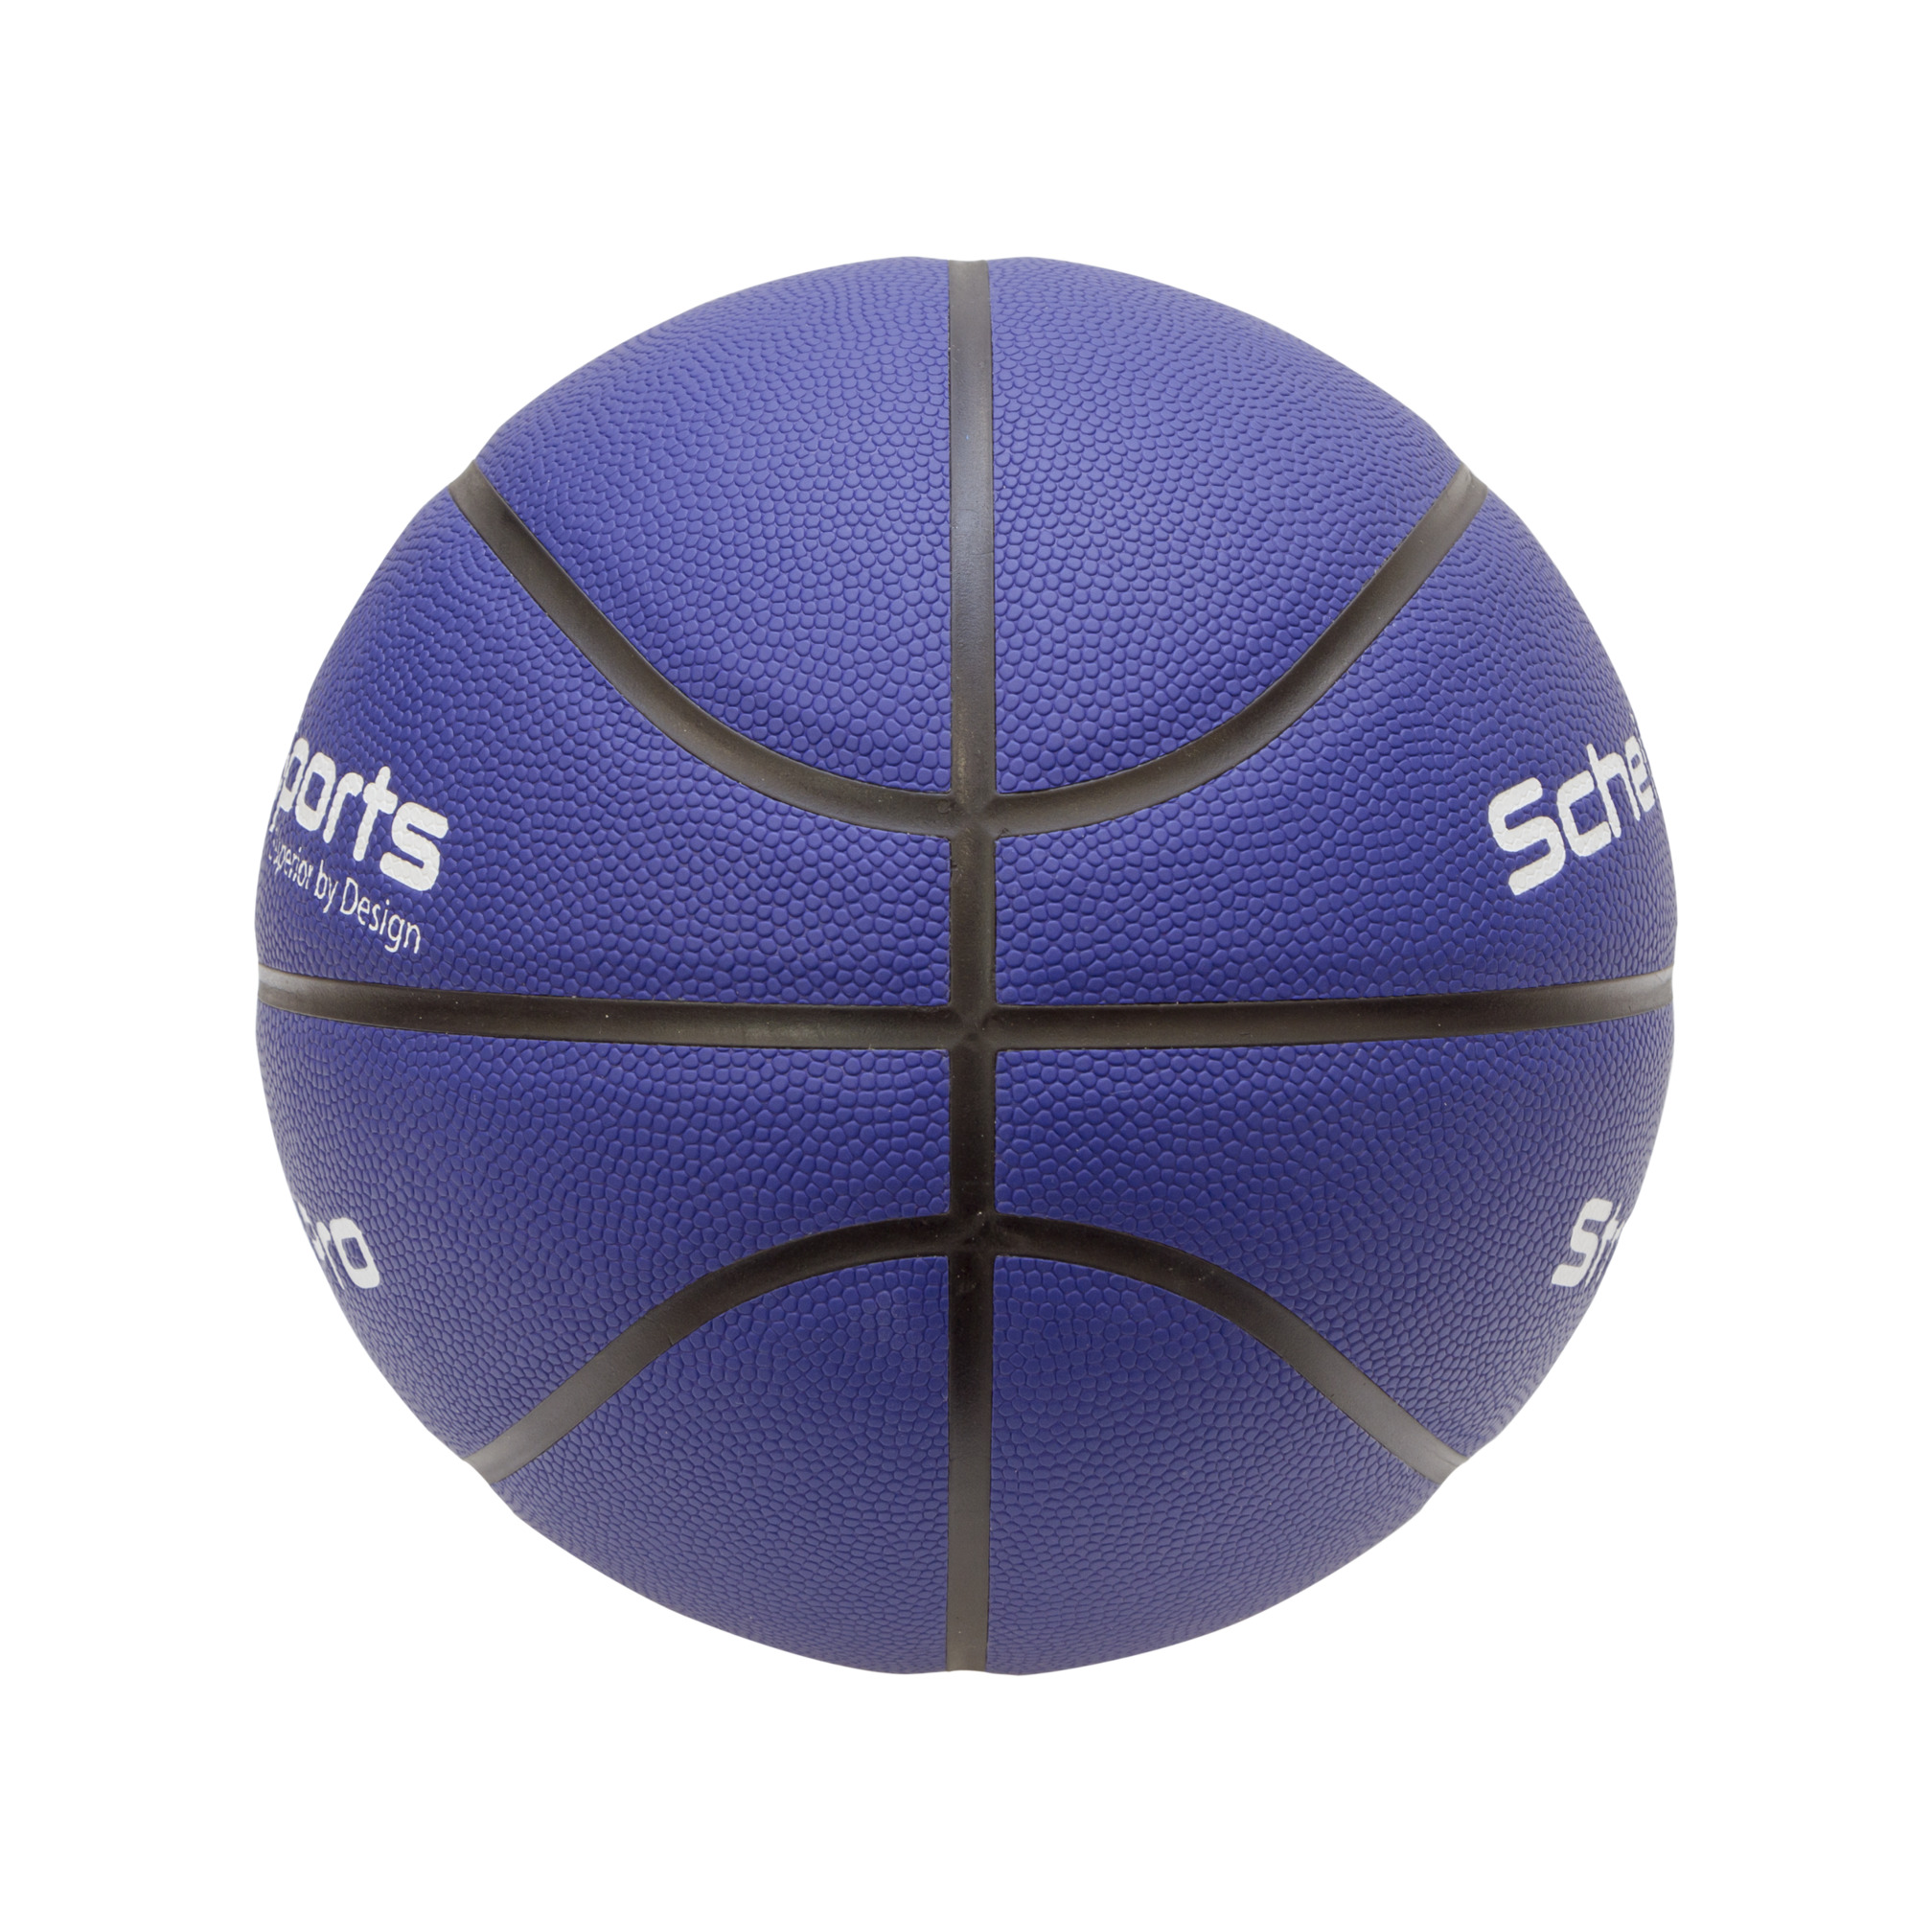 Schelde Sports Basketball 3x3 Street Pro, Size 6